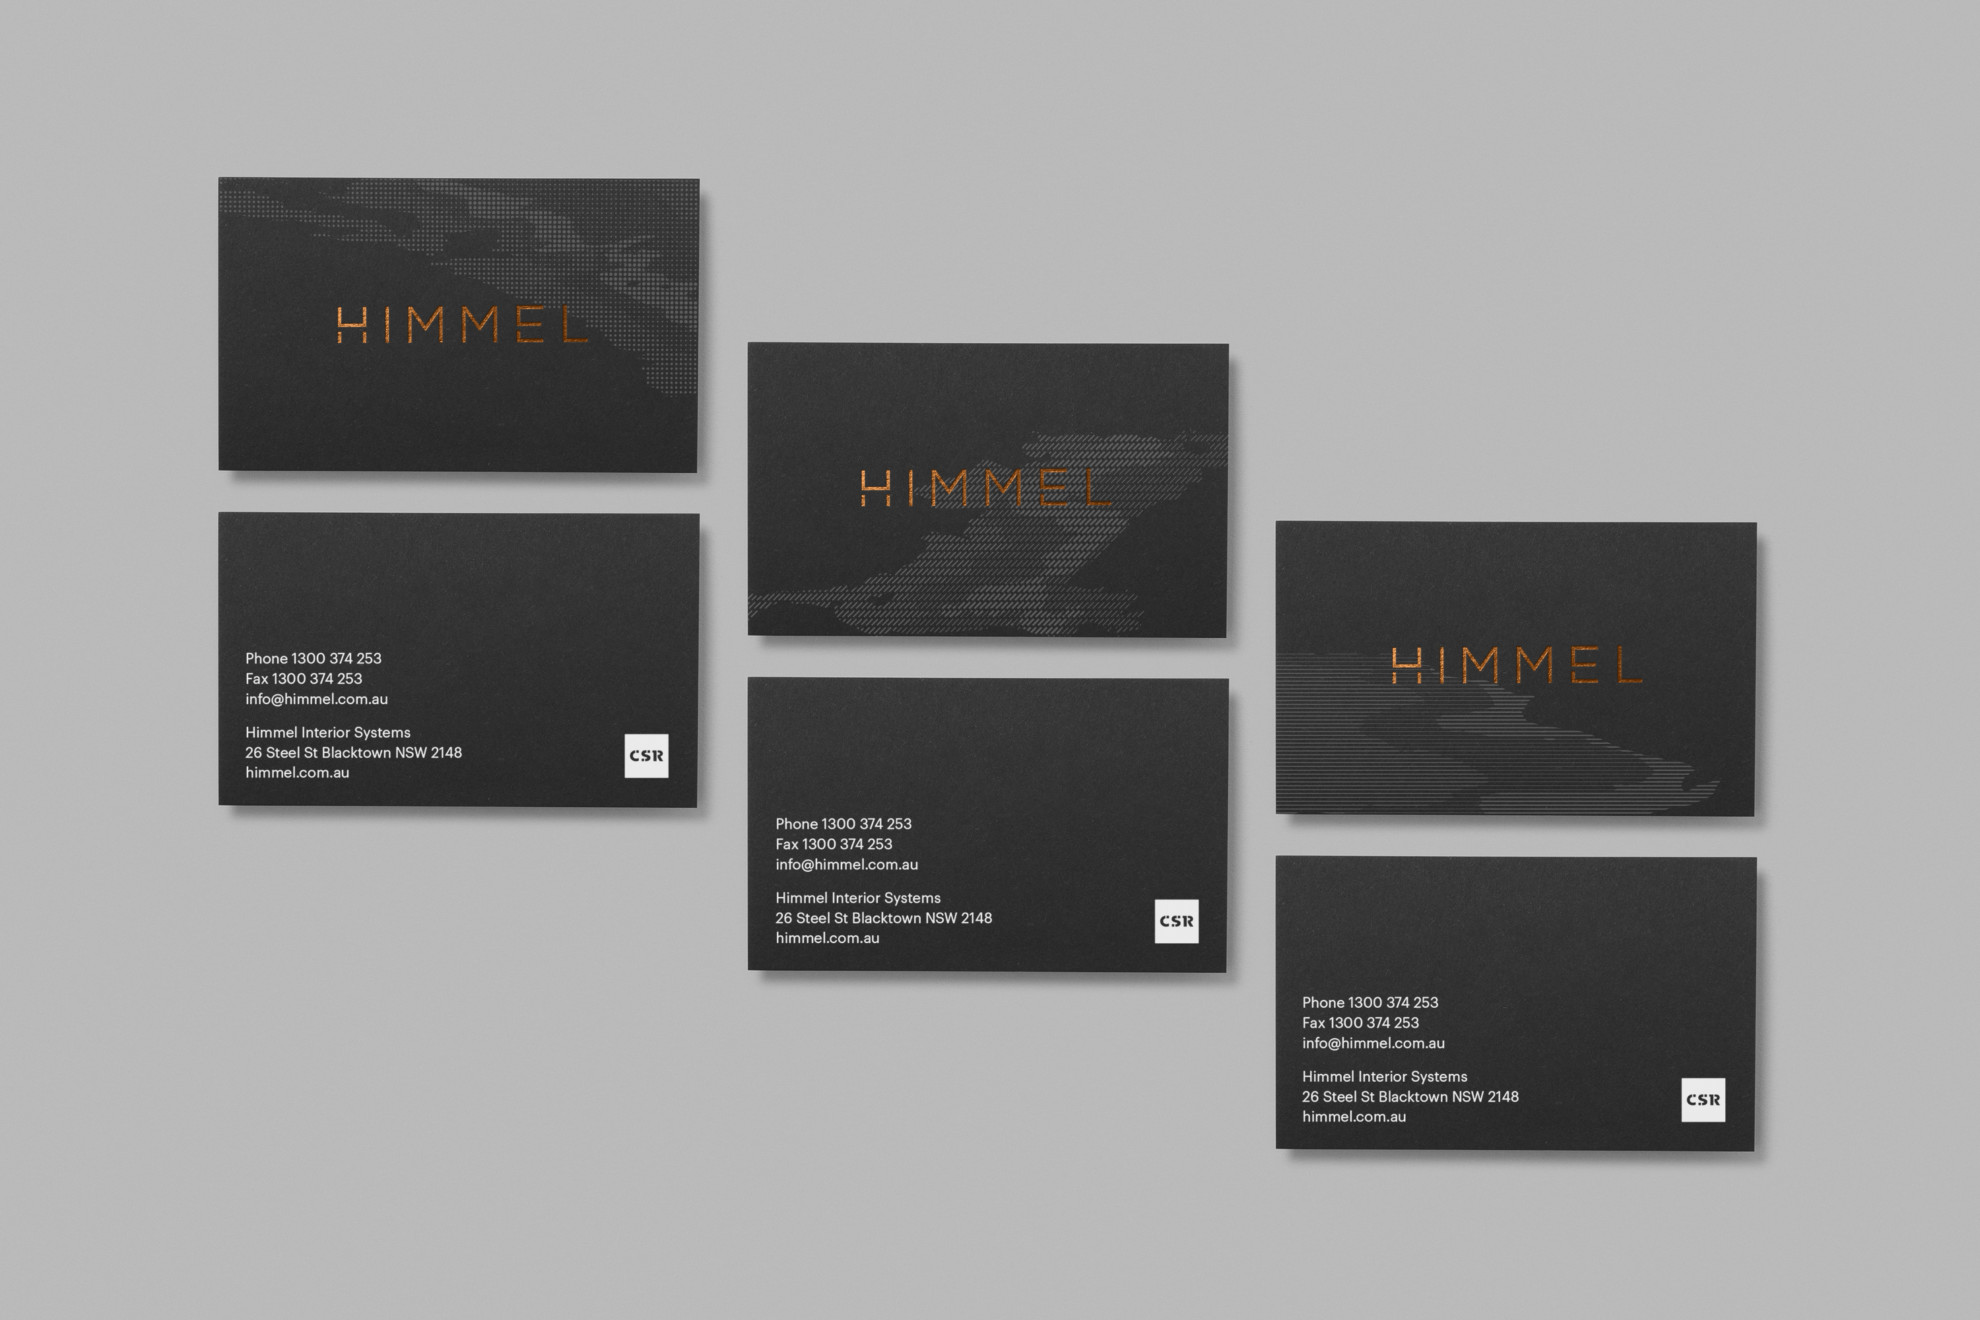 Himmel - Business Cards